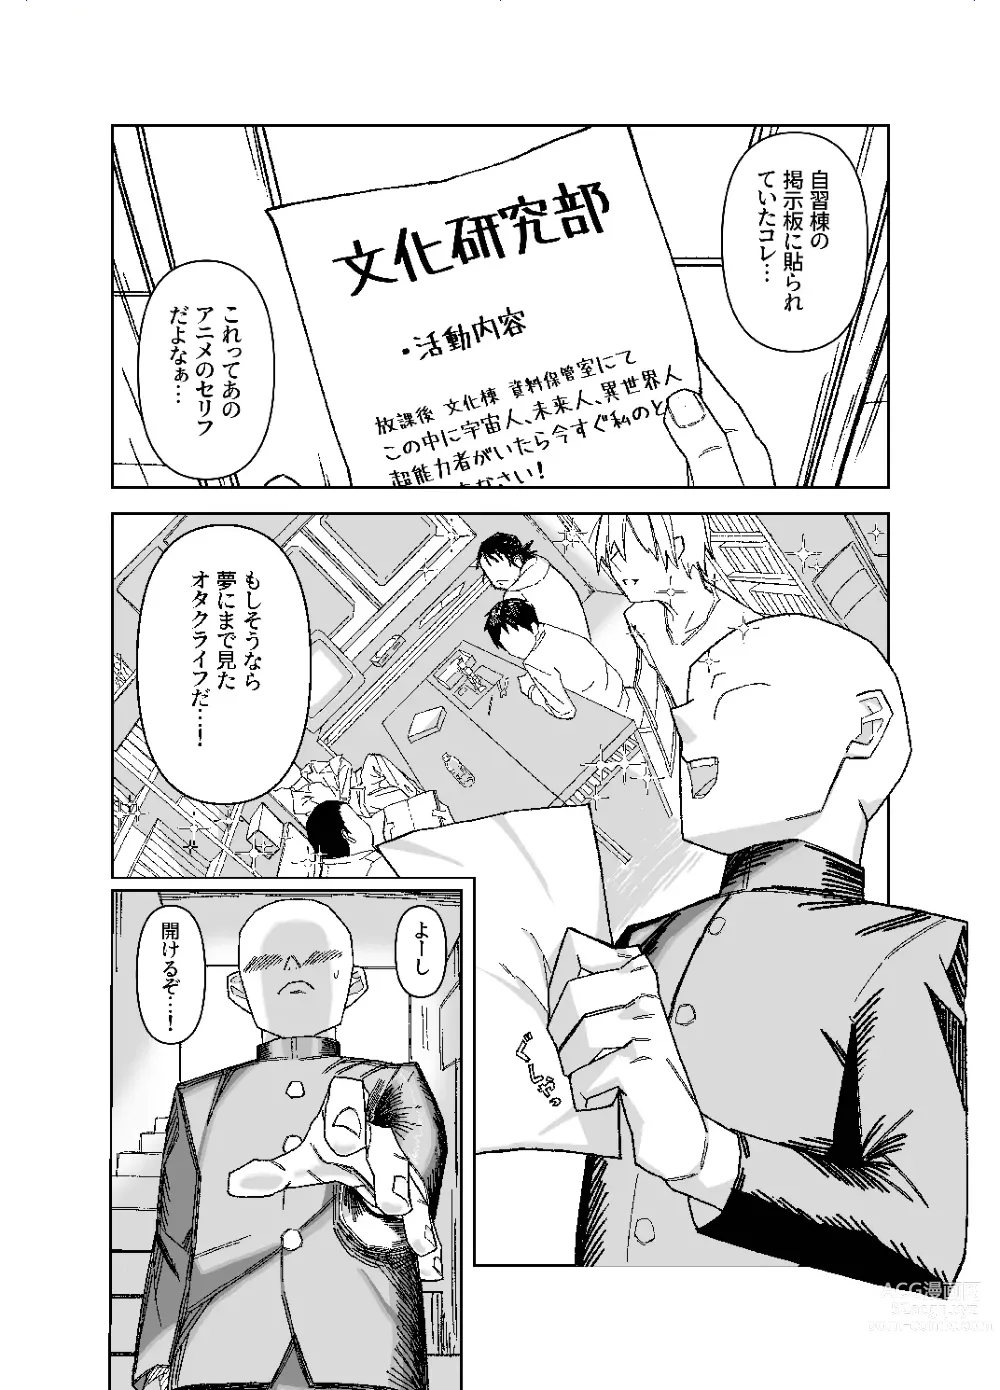 Page 4 of doujinshi Setsuritsu! ASMR-bu!